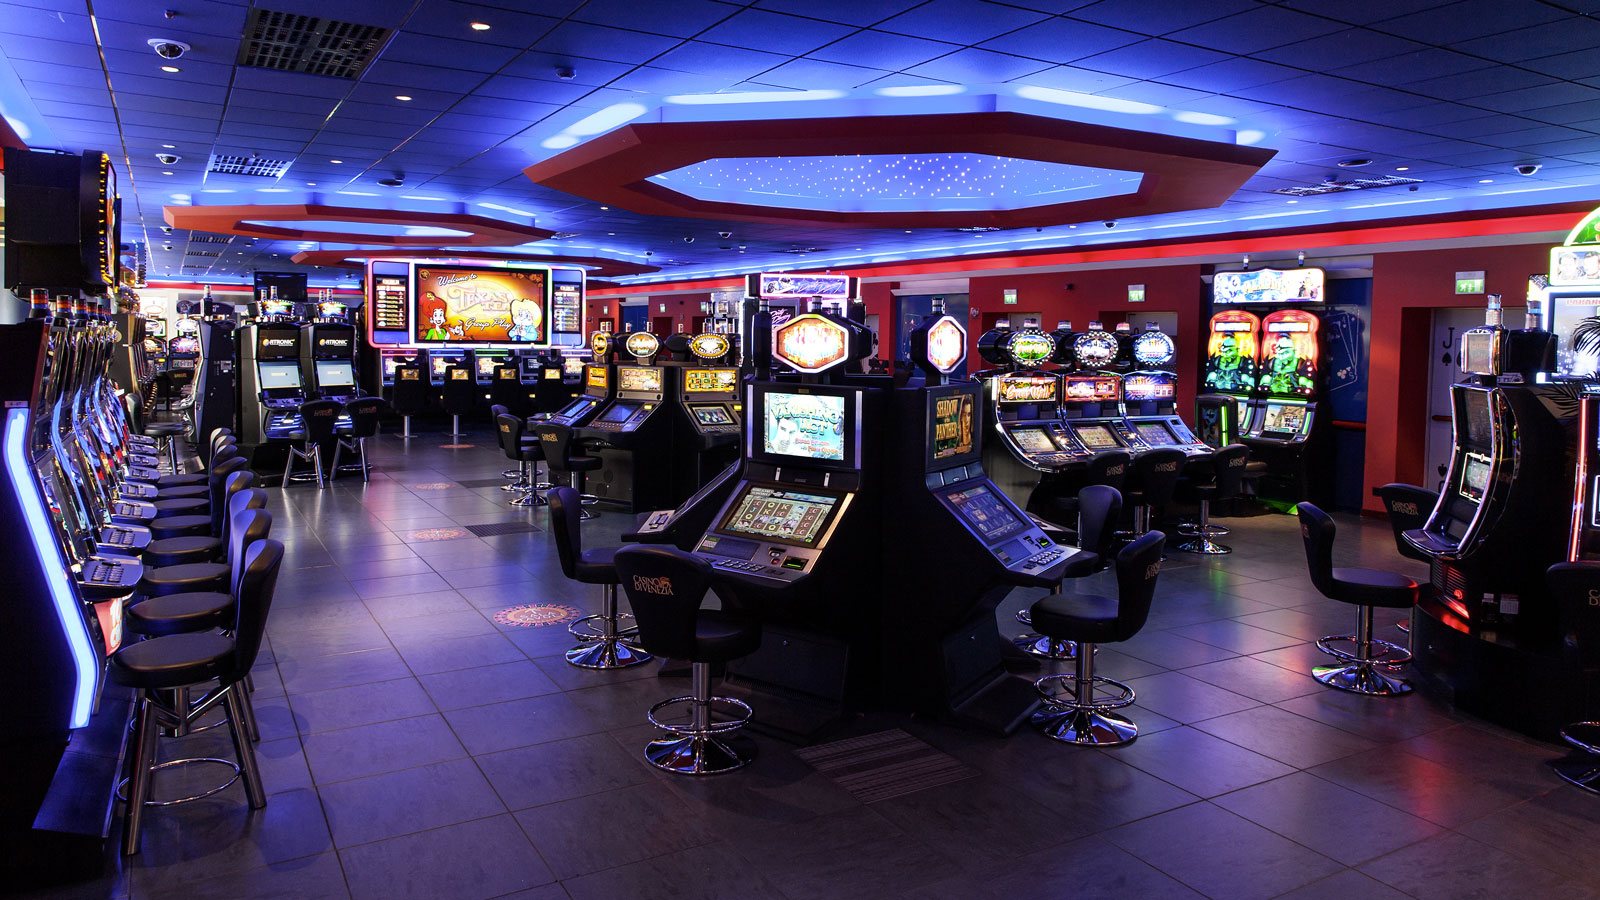 Актуальное new retro casino. Зал игровых автоматов Торнадо. Игровые залы казино. Игровой зал автоматы казино. Игровой зал с игровыми автоматами.